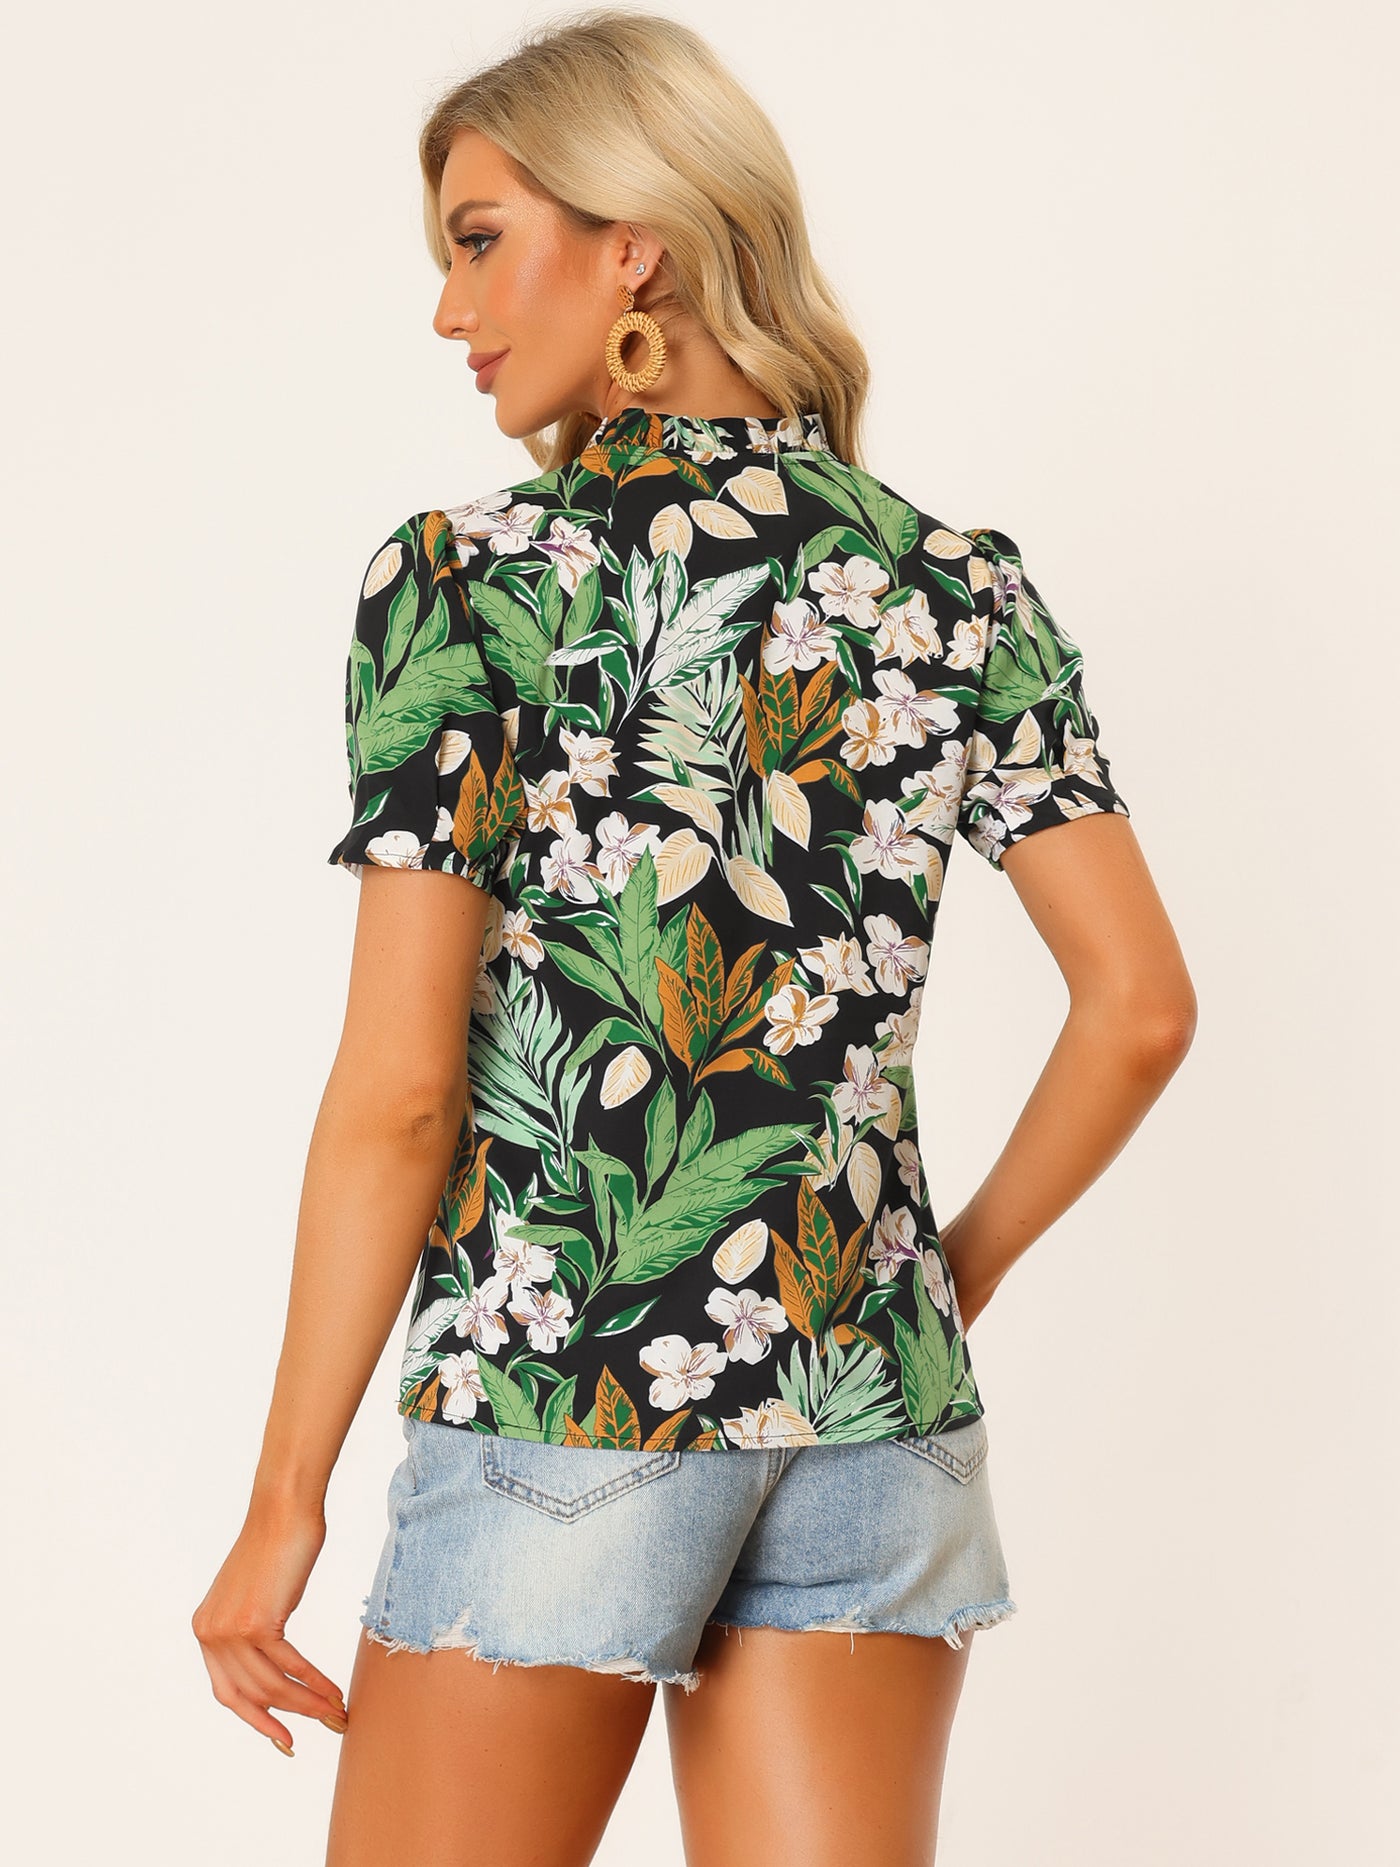 Allegra K Tropical Summer Tops Short Sleeve V Neck Printed Blouse